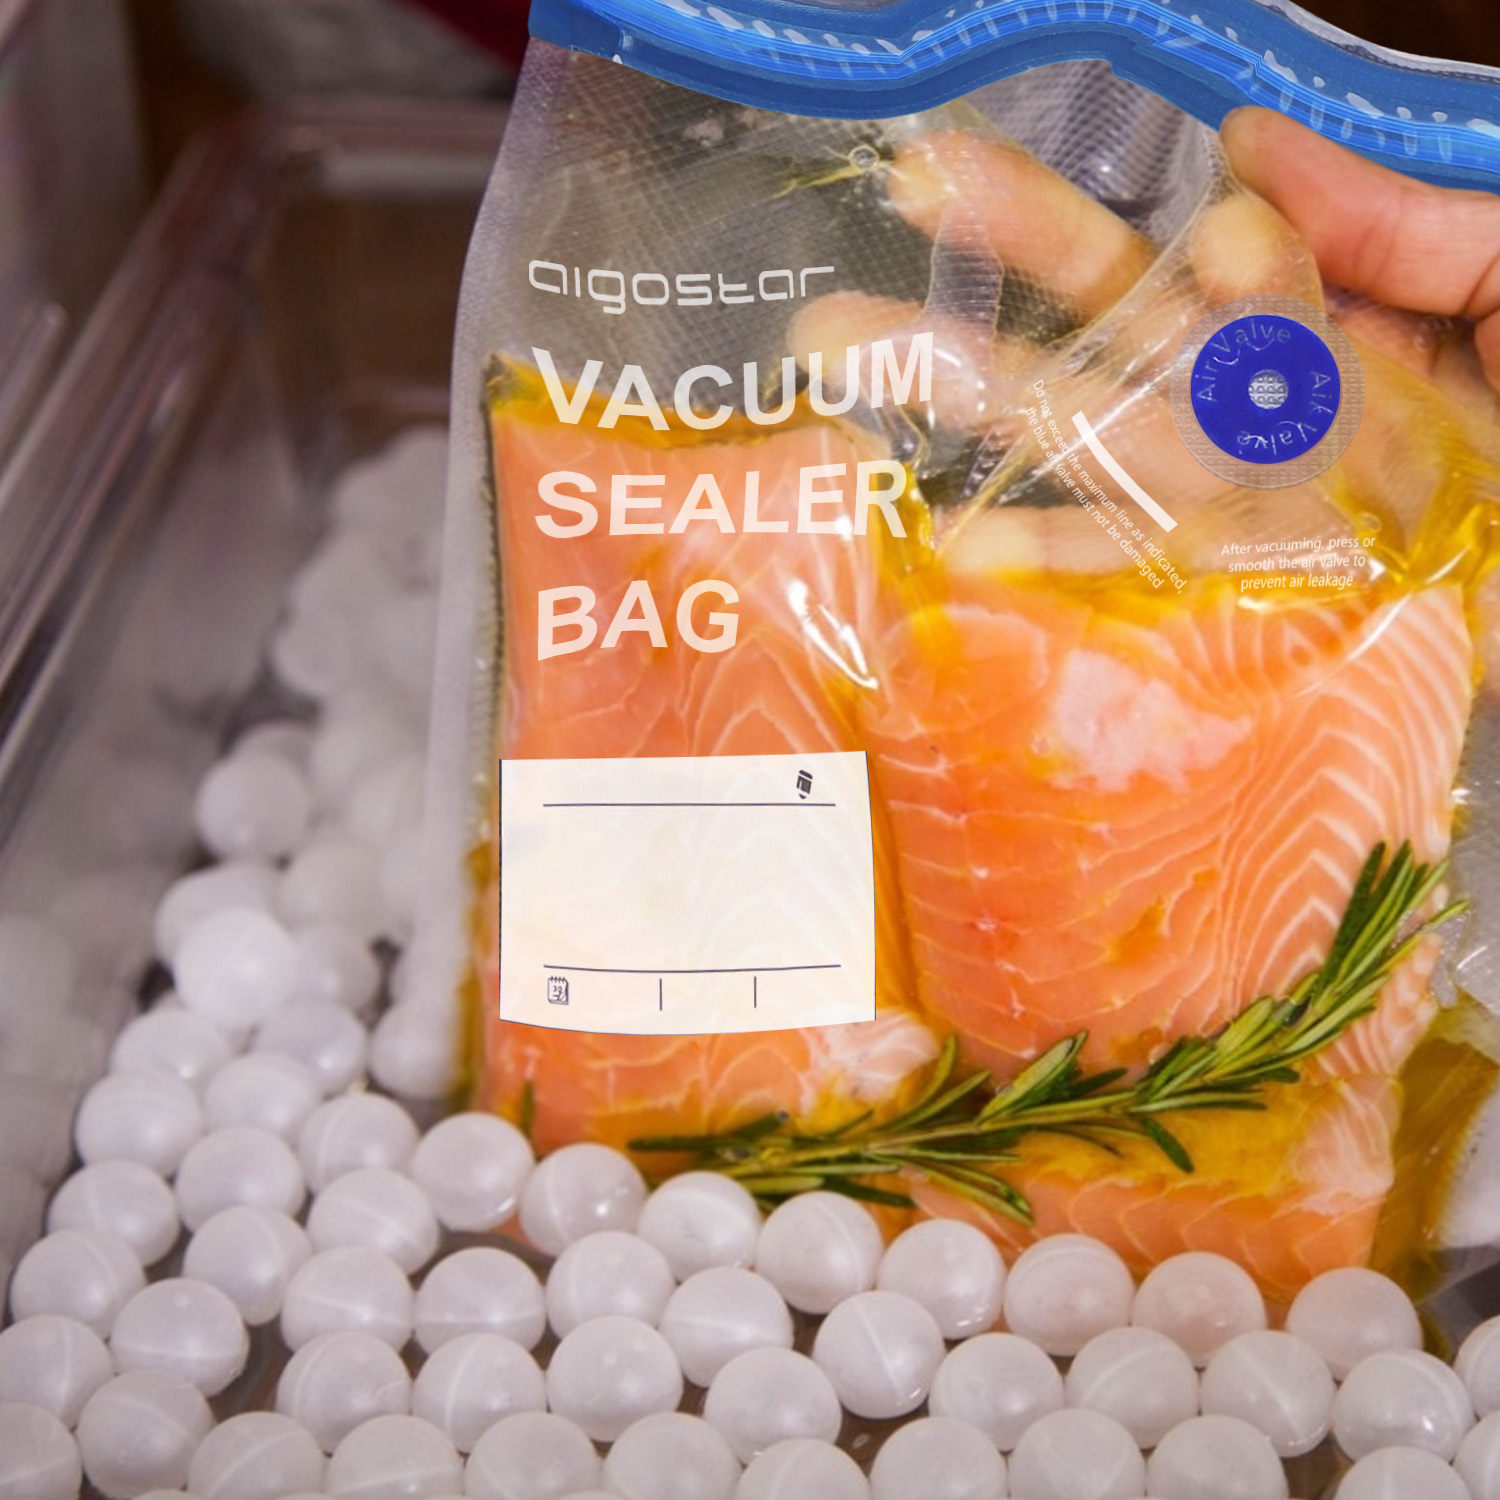 Sous Vide Bags,Reusable Vacuum Food Sealer Bags,Food Storage Freezer Bags 